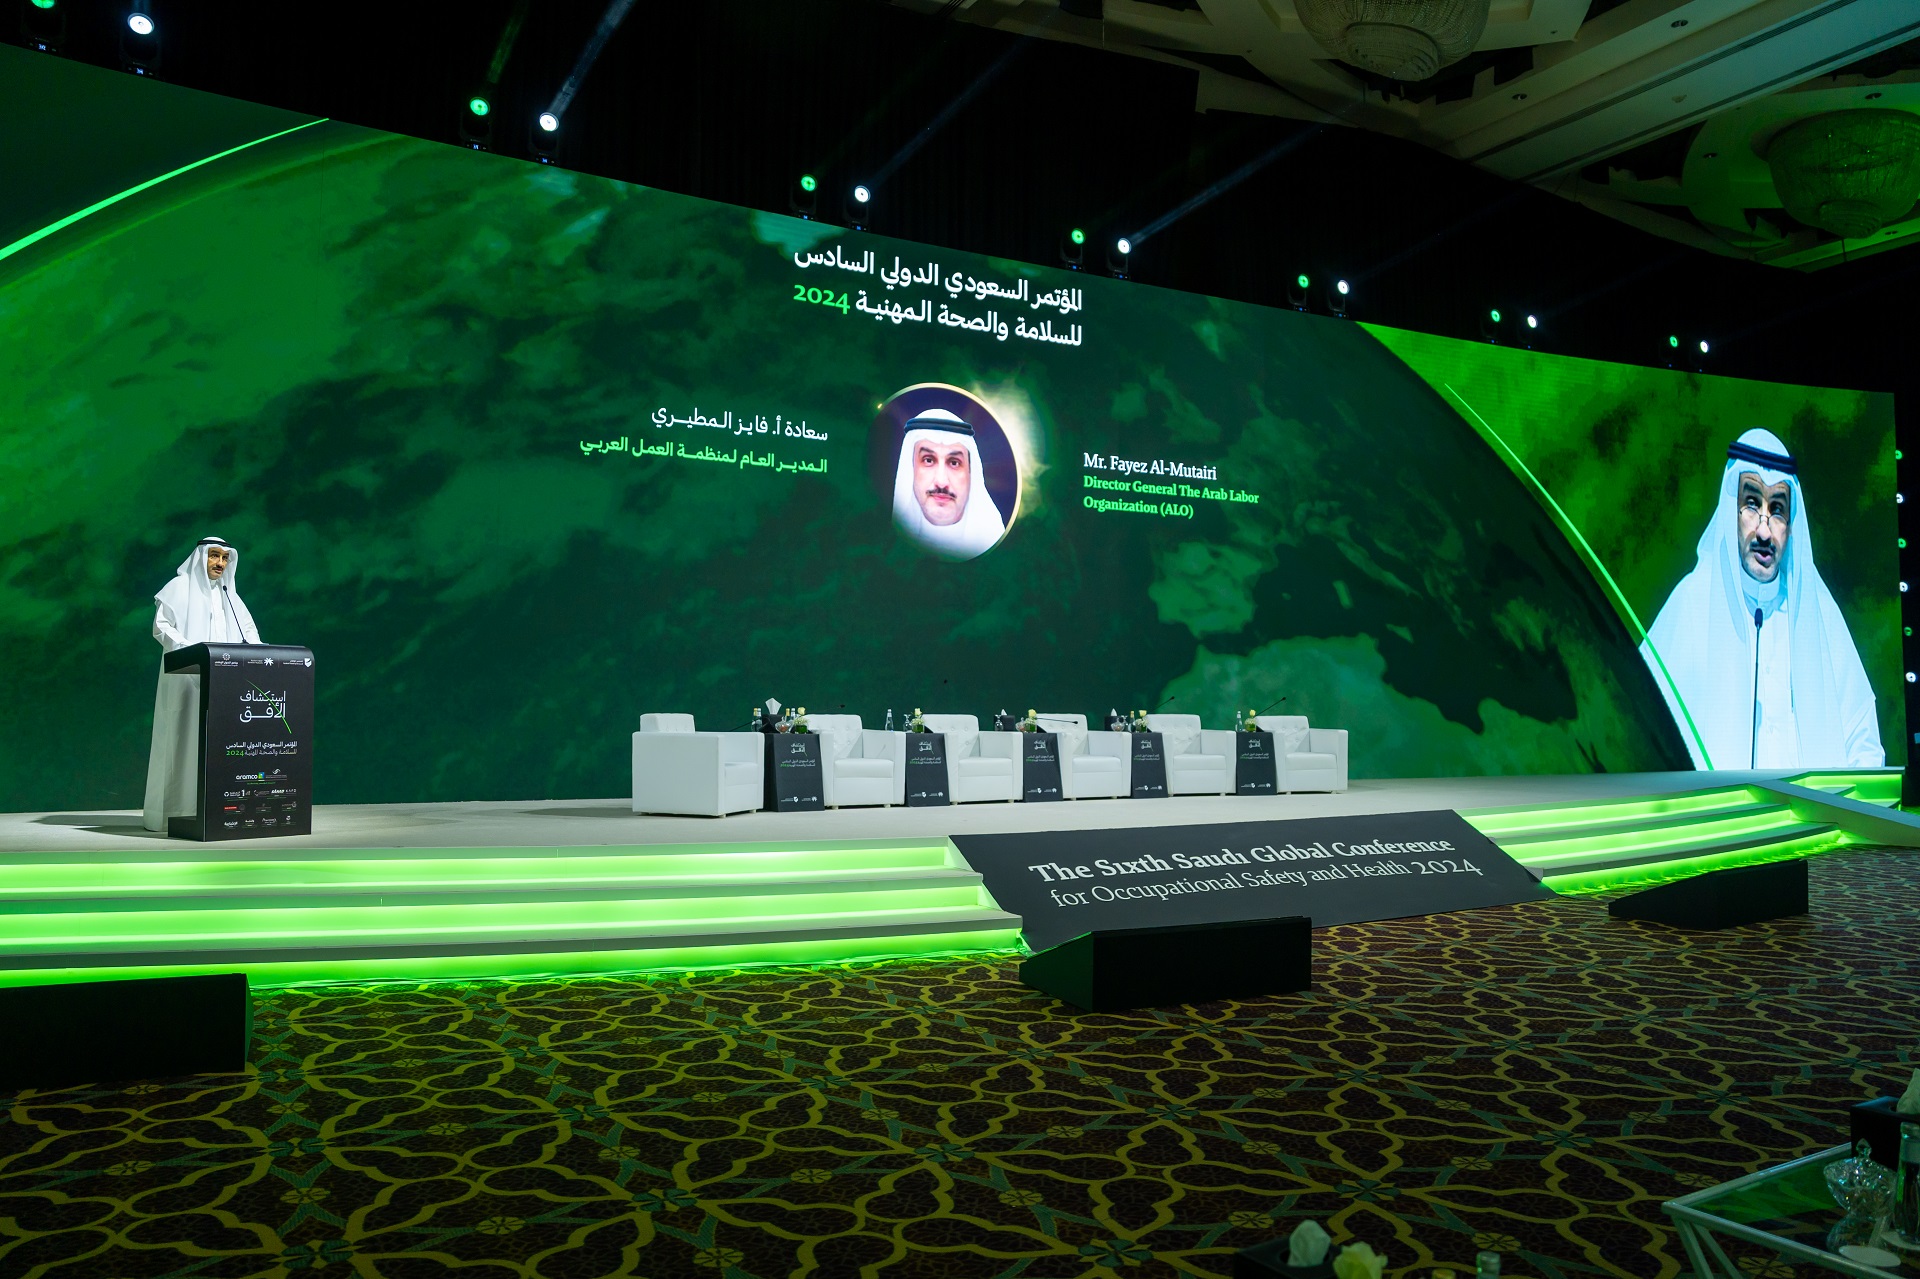 المطيري في افتتاح المؤتمر السعودي الدولي السادس: "ملتزمين بحق العامل في بيئة عمل آمنة وصحية كحق أساسي من حقوق الإنسان"